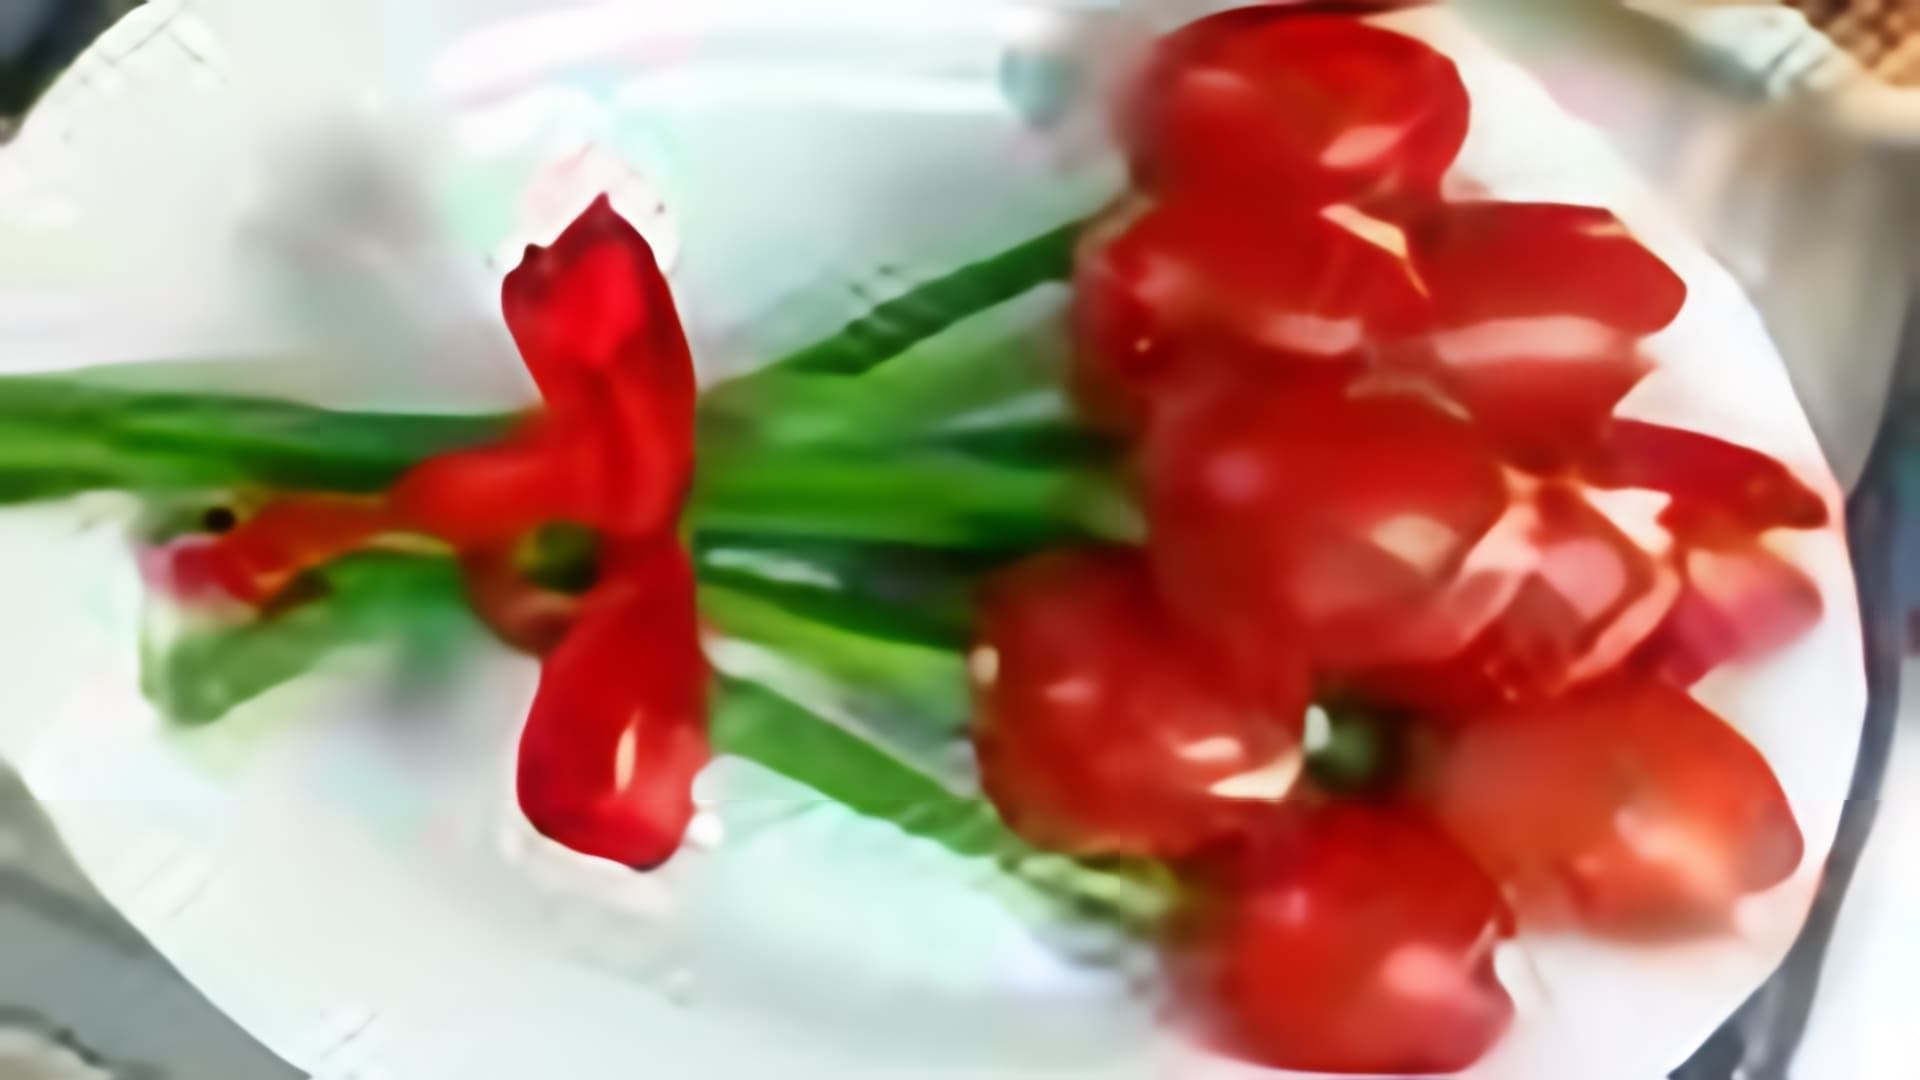 В этом видео показано, как сделать тюльпаны из помидоров, которые могут стать отличным украшением праздничного стола